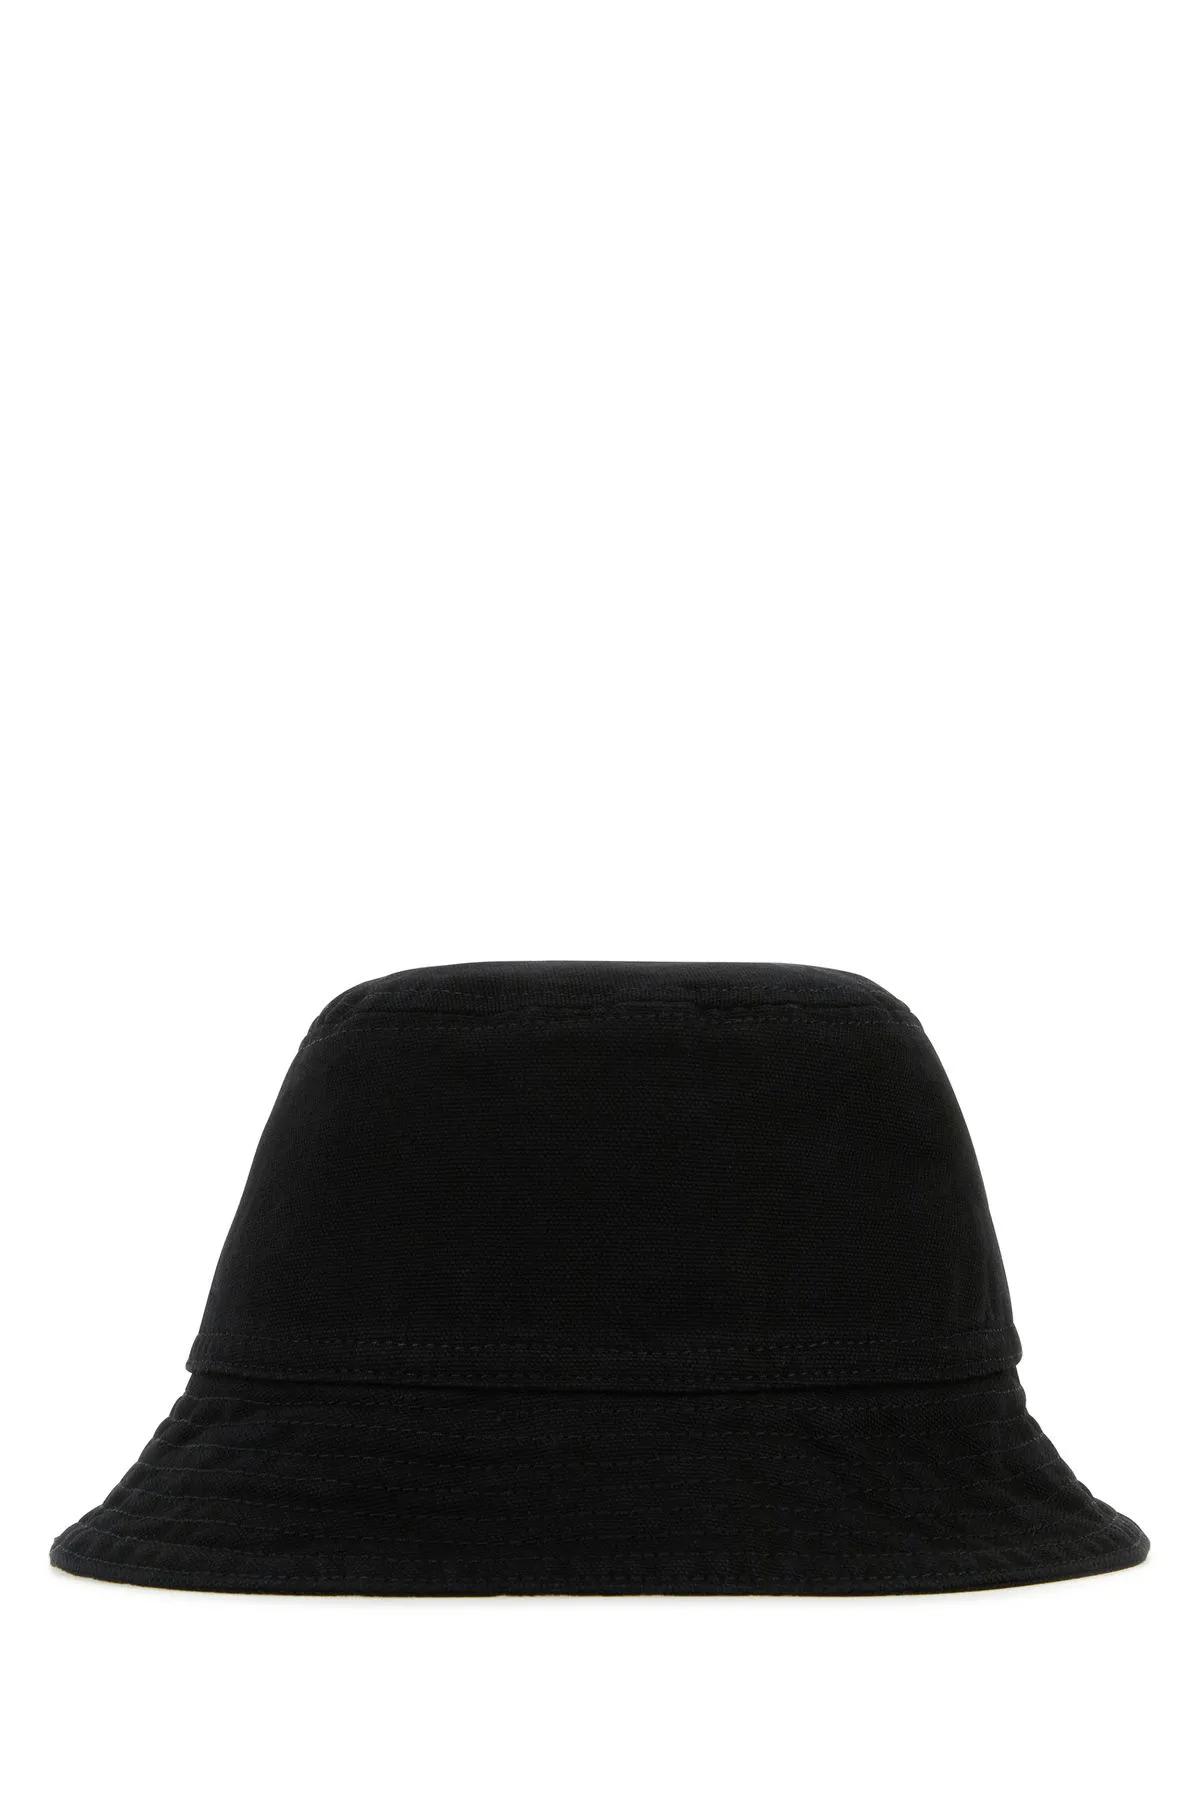 Shop Carhartt Black Cotton Bayfield Bucket Hat